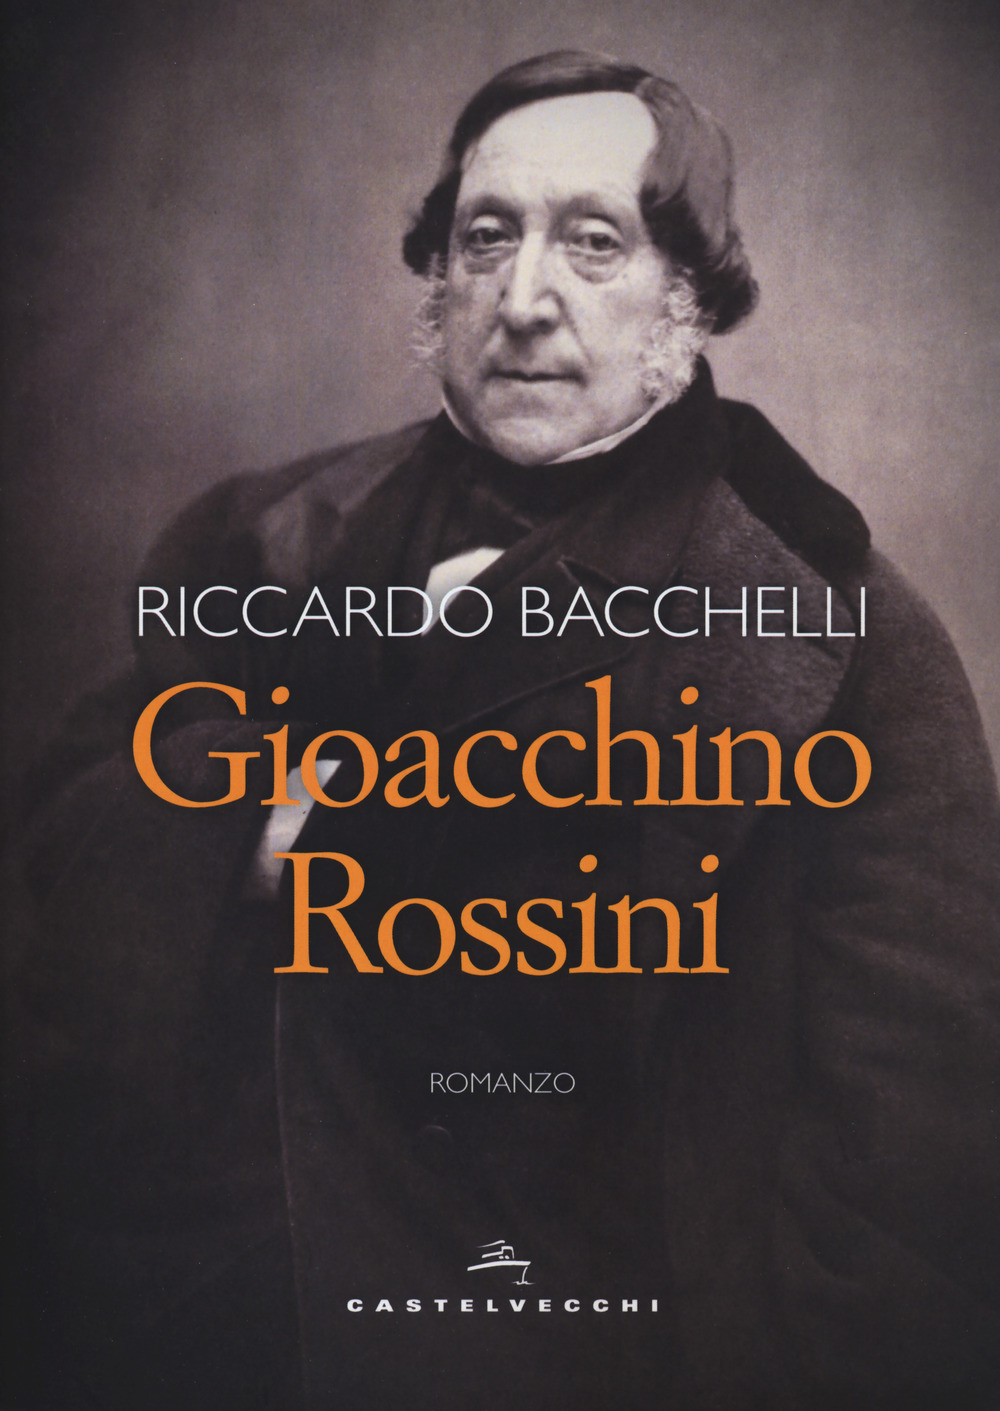 Image of Gioacchino Rossini